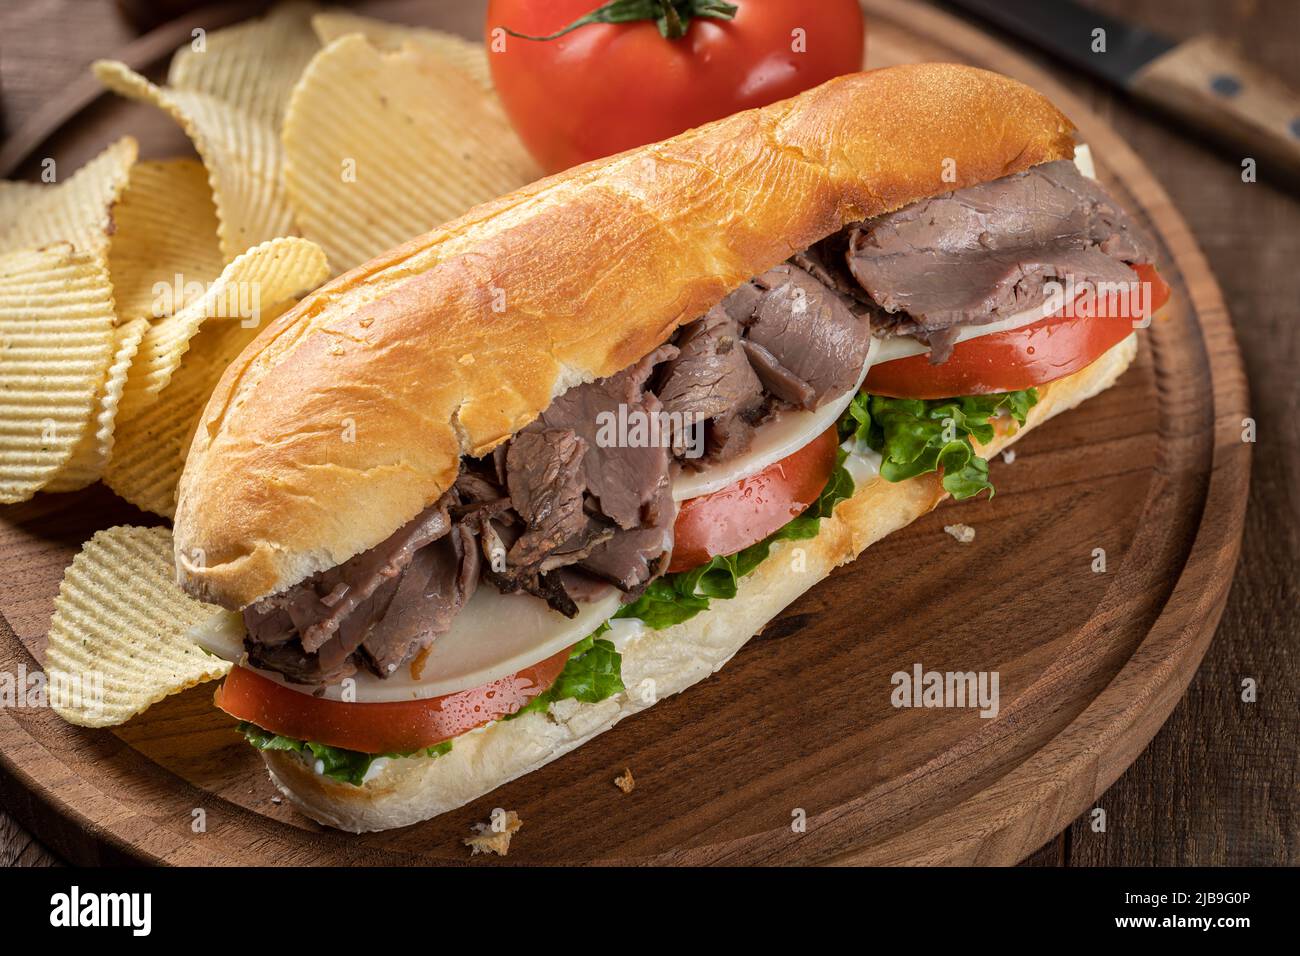 Sándwich submarino con carne asada, queso, tomate y lechuga en un rollo de hoagie con patatas fritas en una tabla de cortar Foto de stock